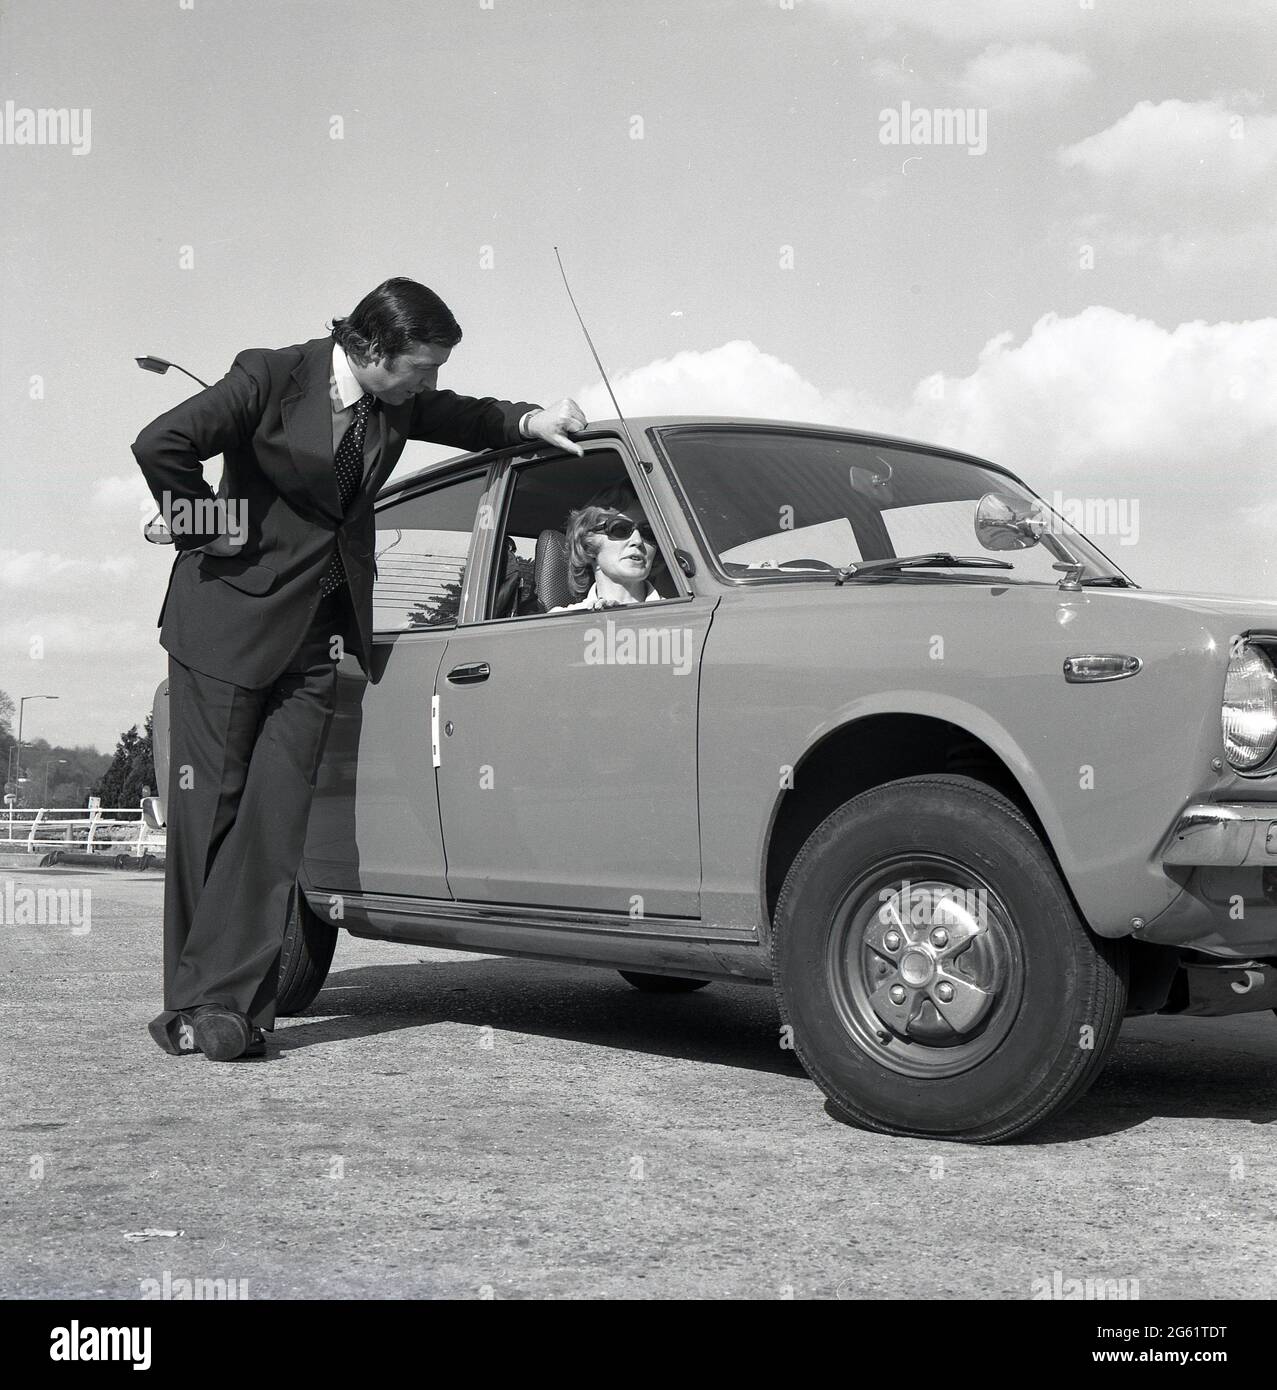 1975, sur une zone pavée hors route, un homme en costume parlant à une femme attirante en lunettes de soleil assis dans son nouveau voiture de Datsun Cherry 100A, Angleterre, Royaume-Uni. Notez le revers large de la veste de costume pour homme et le bas évasé du pantalon et des chaussures plates-formes, des styles de mode distinctifs des années 70. Nissan a commencé à exporter des voitures portant le logo Datsun vers le Royaume-Uni en 1968 et la marque japonaise a connu un grand succès, avec des voitures fiables et abordables, à une époque où l'industrie automobile britannique était en crise, avec des grèves de la main-d'œuvre et une réputation pour faire des voitures d'une mauvaise qualité et fiabilité. Banque D'Images